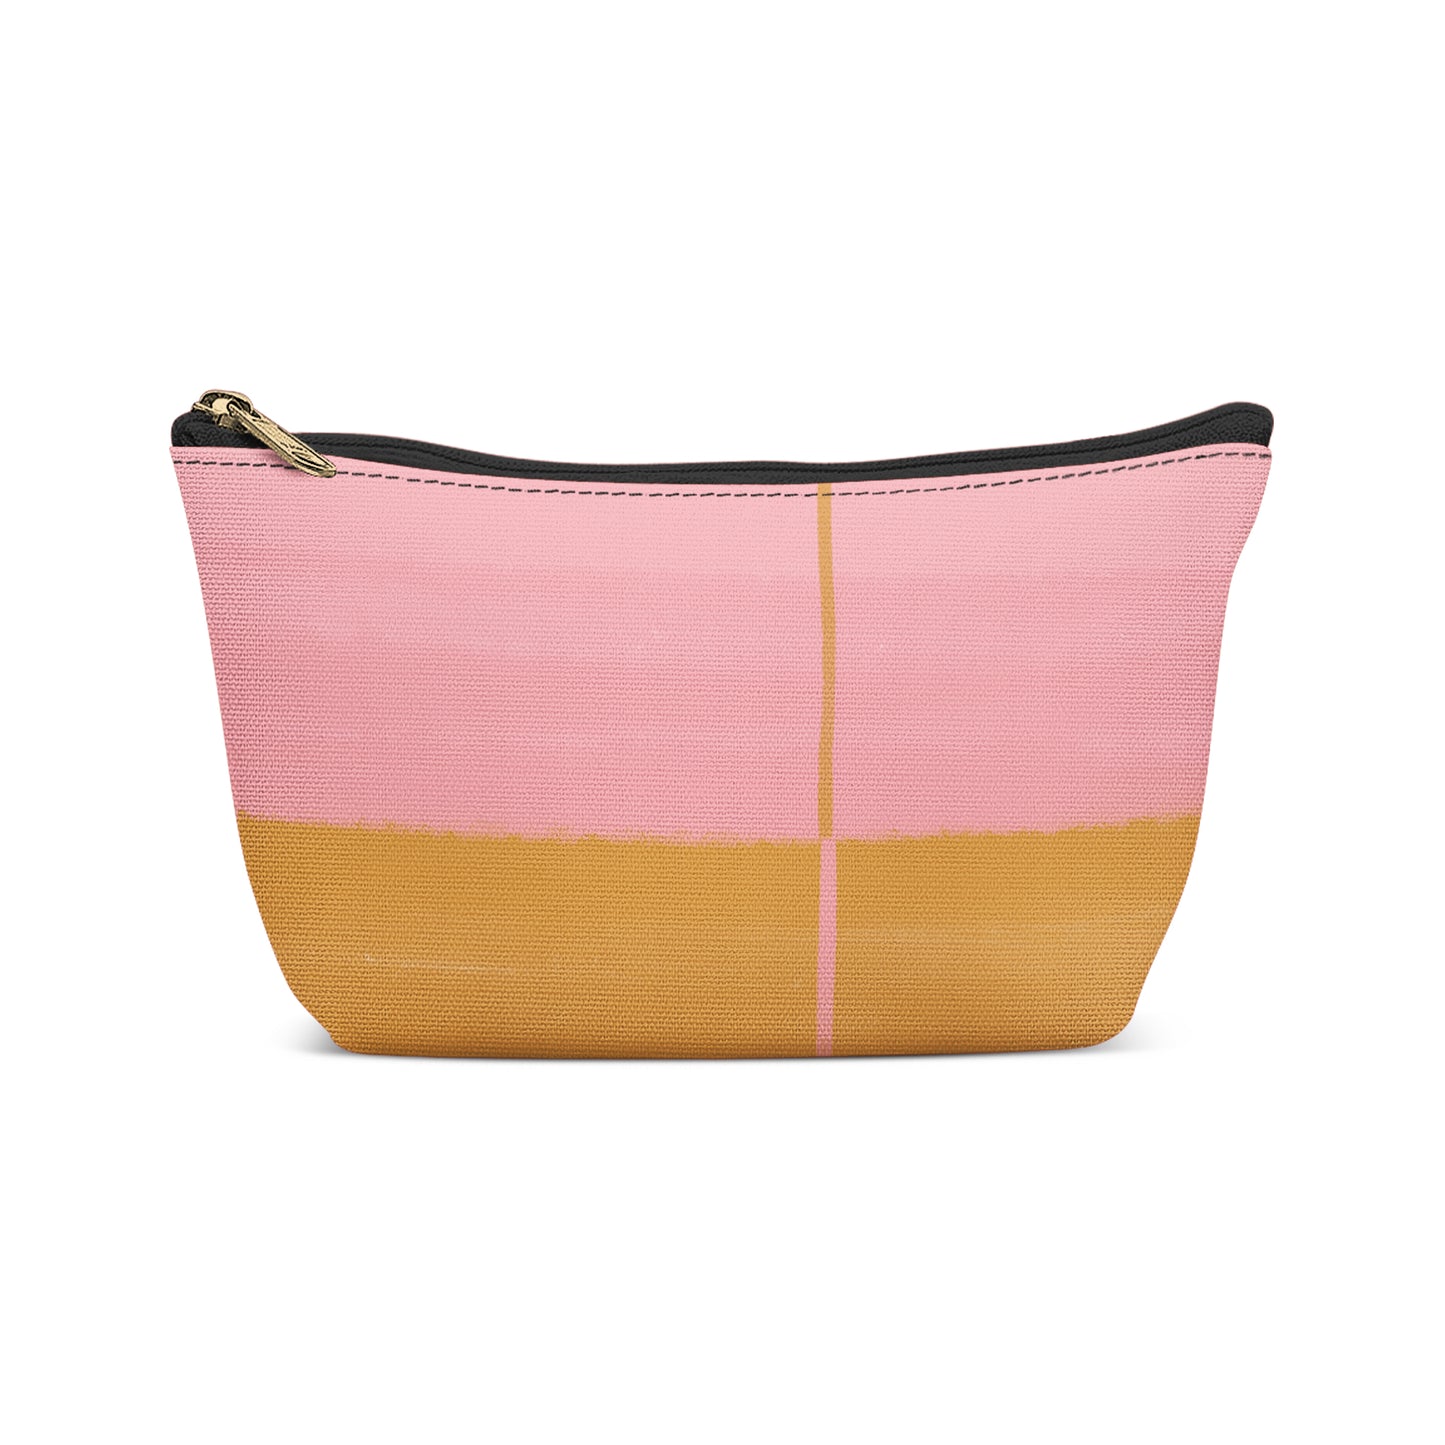 Pink and Mustard Modern Makeup Bag